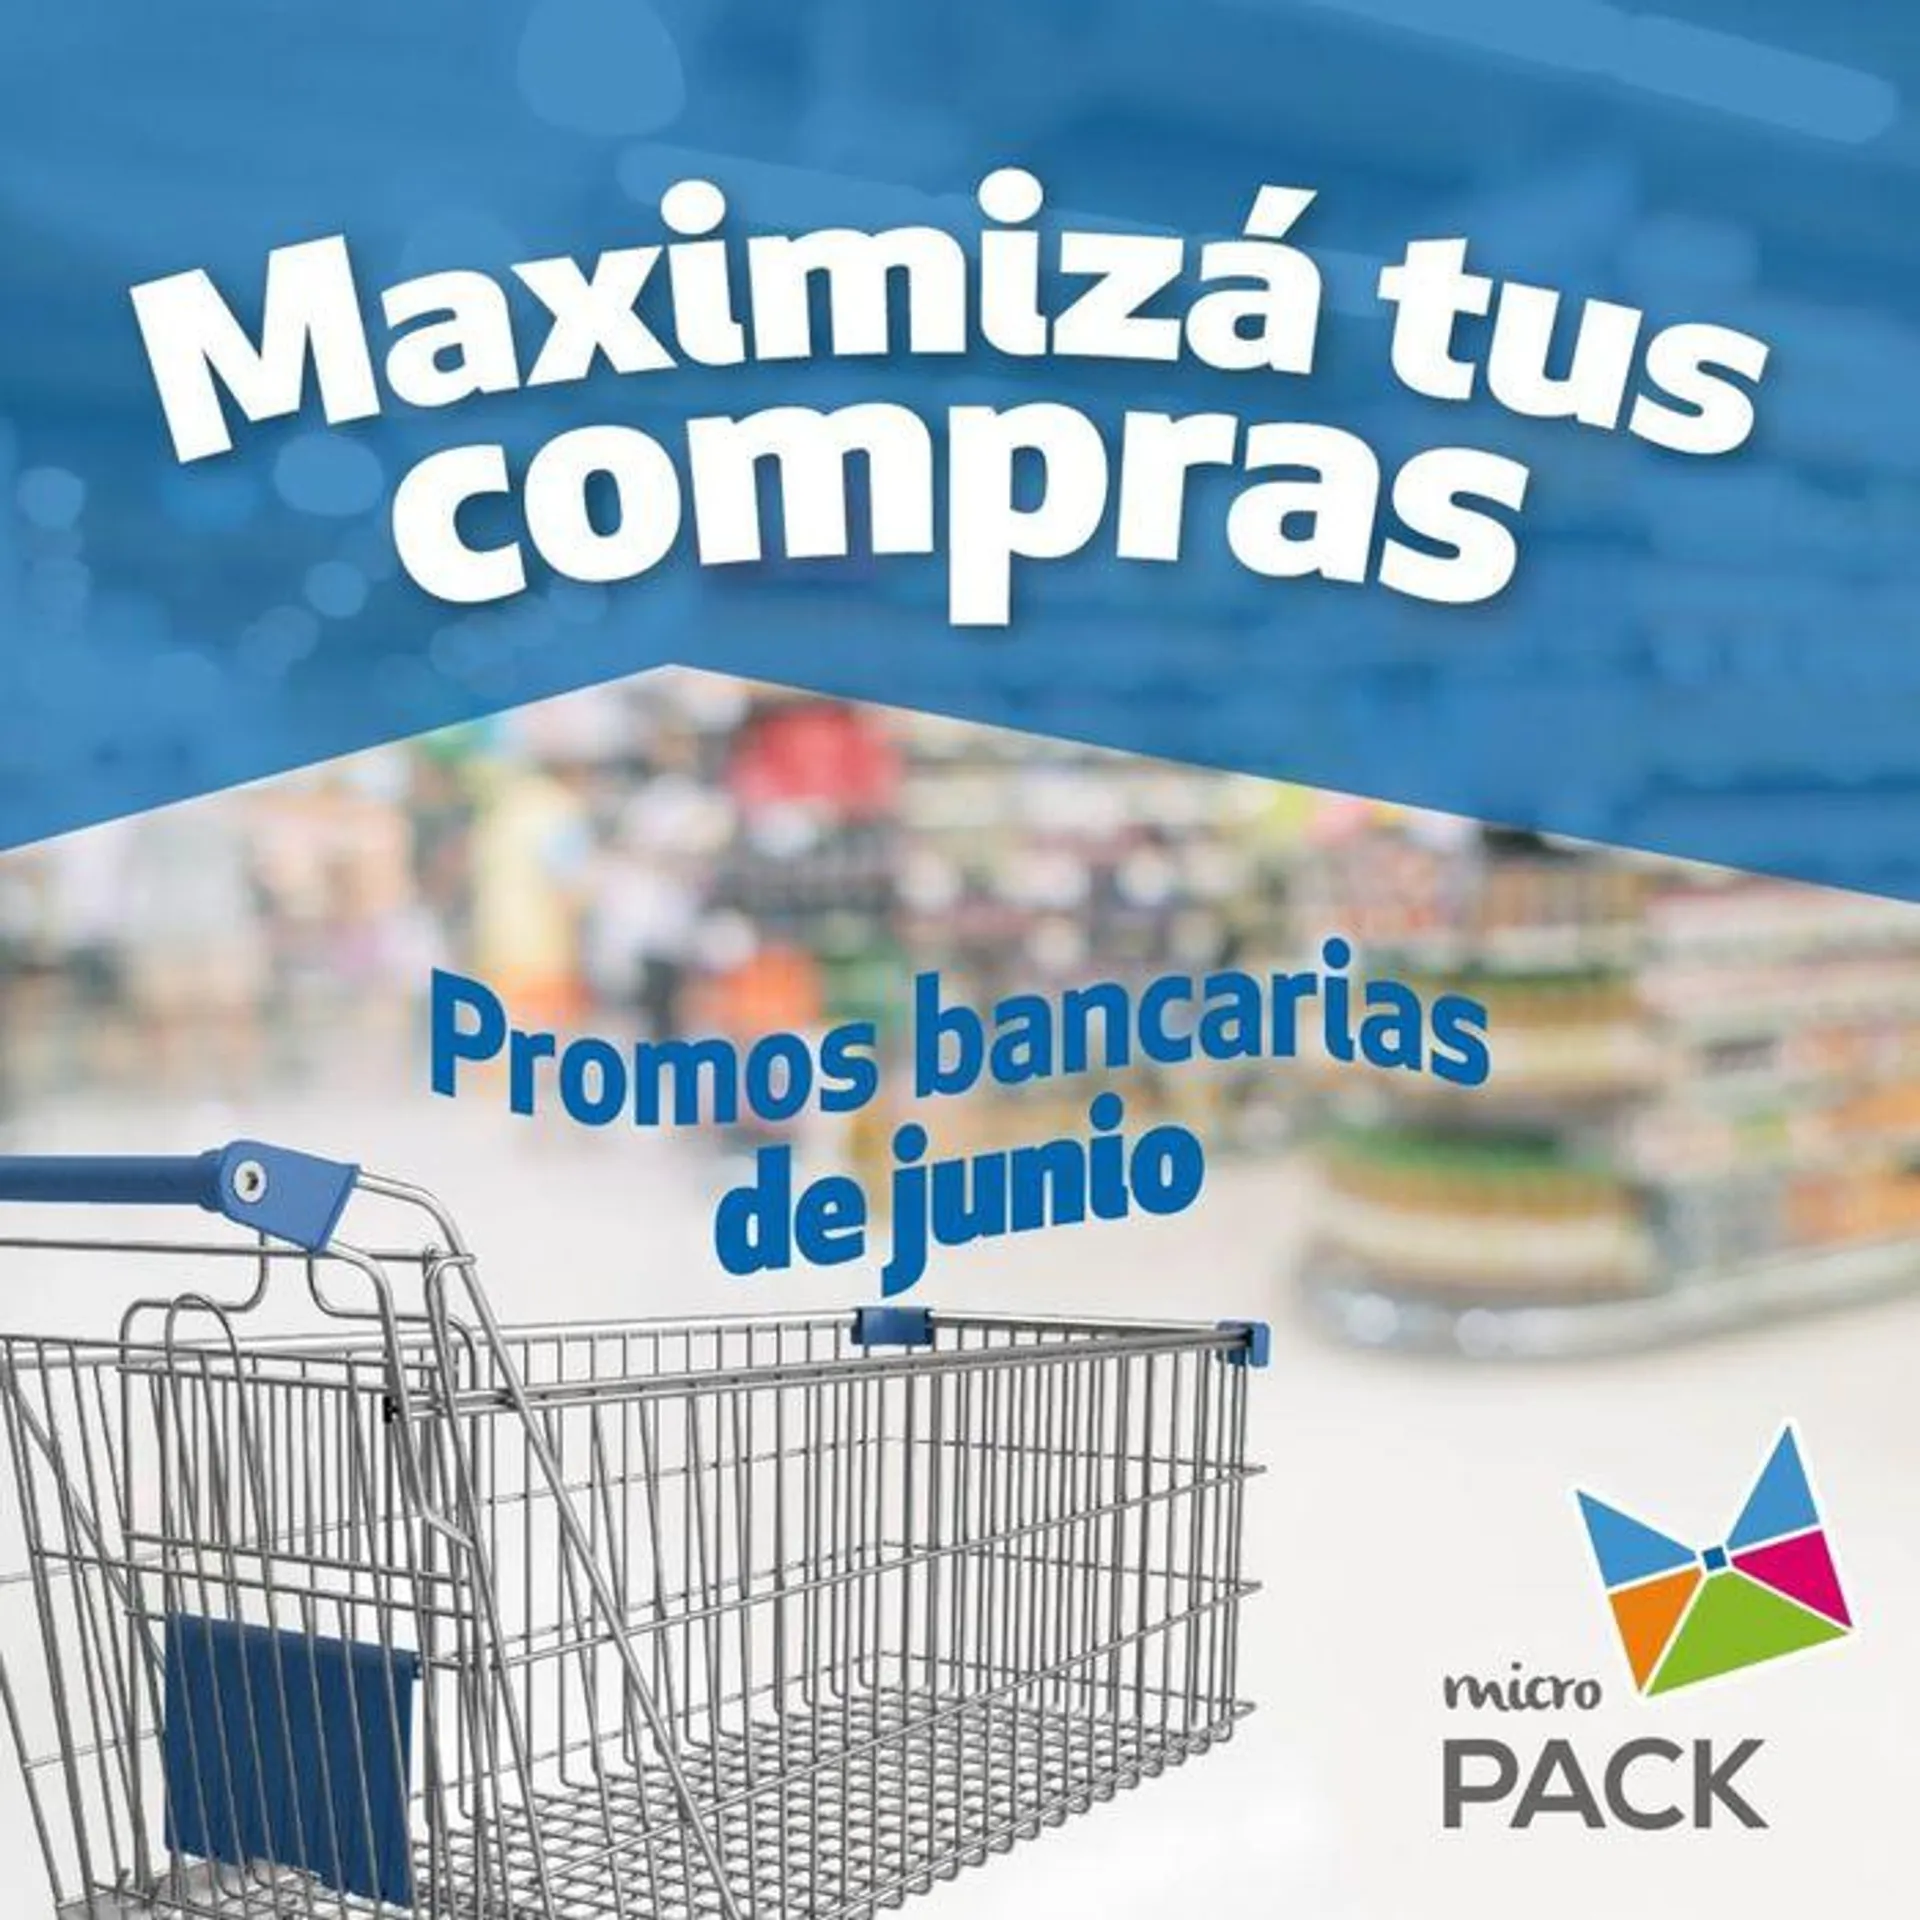 Promociones bancarias Junio Micropack - 1